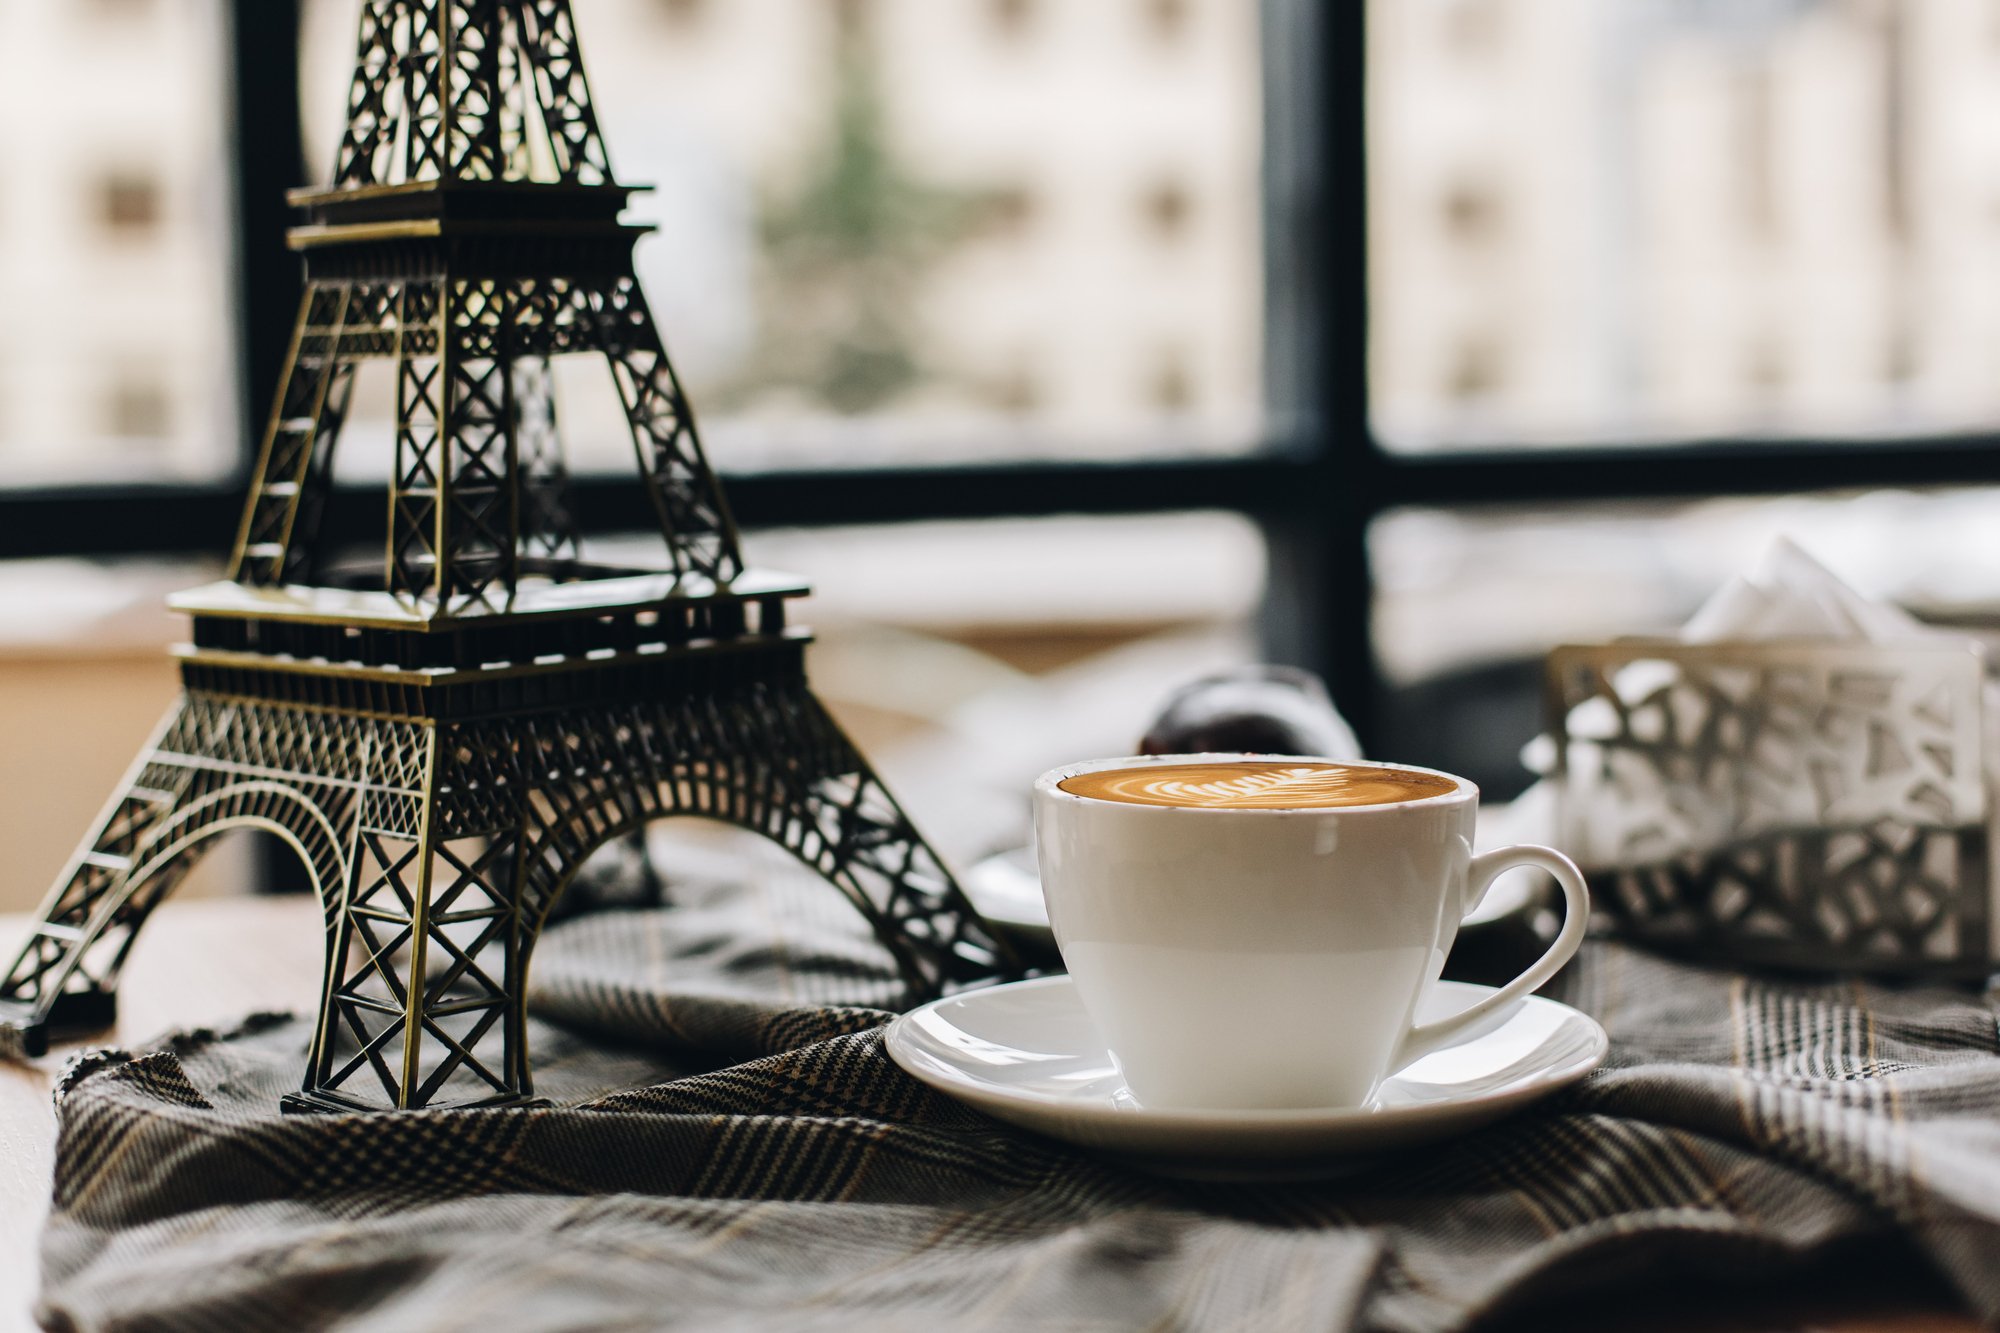 Изображение для Как кофе появился во Франции и зачем Наполеон оставил свою треуголку в кофейне?